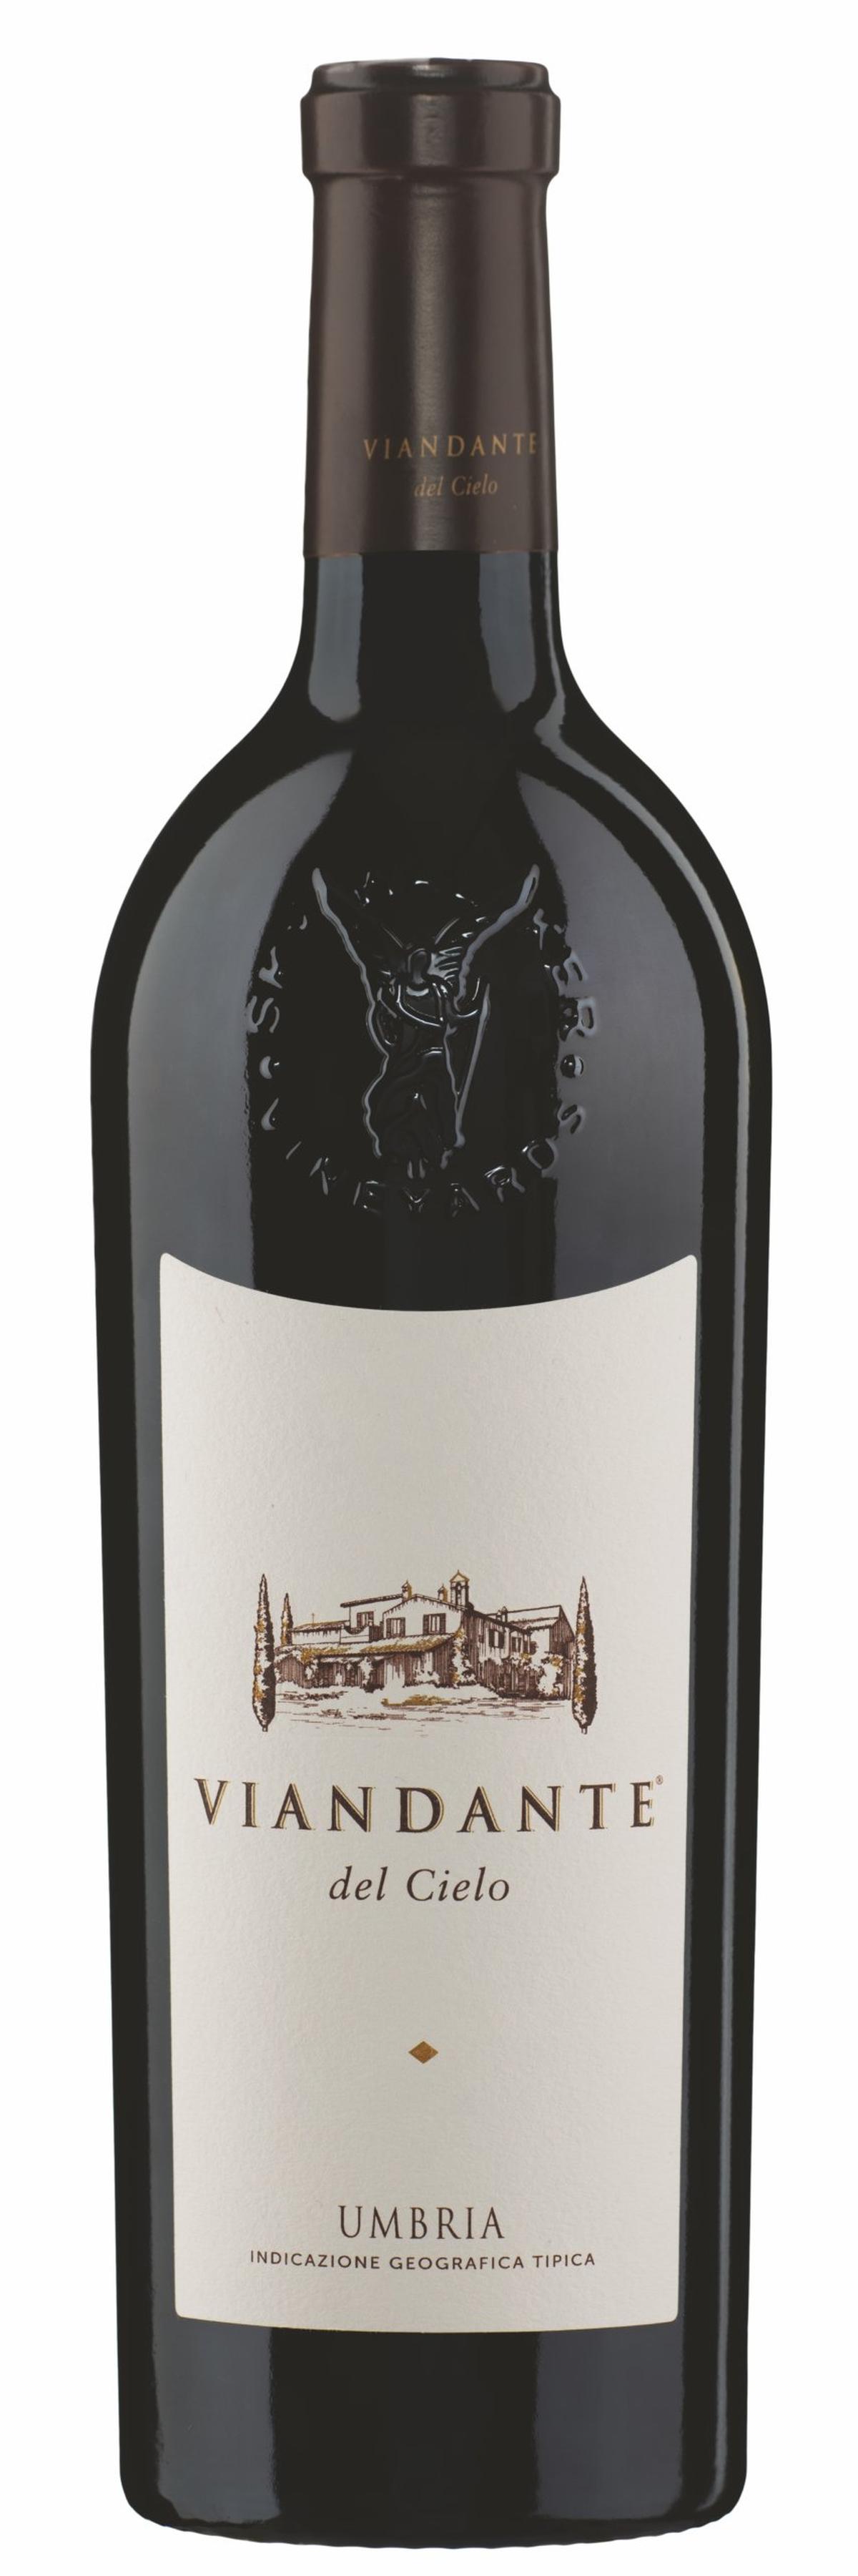 Der Viandante del Cielo Rosso ist ein beeindruckender Blend aus Cabernet Sauvignon und einem kleinen Anteil Merlot.